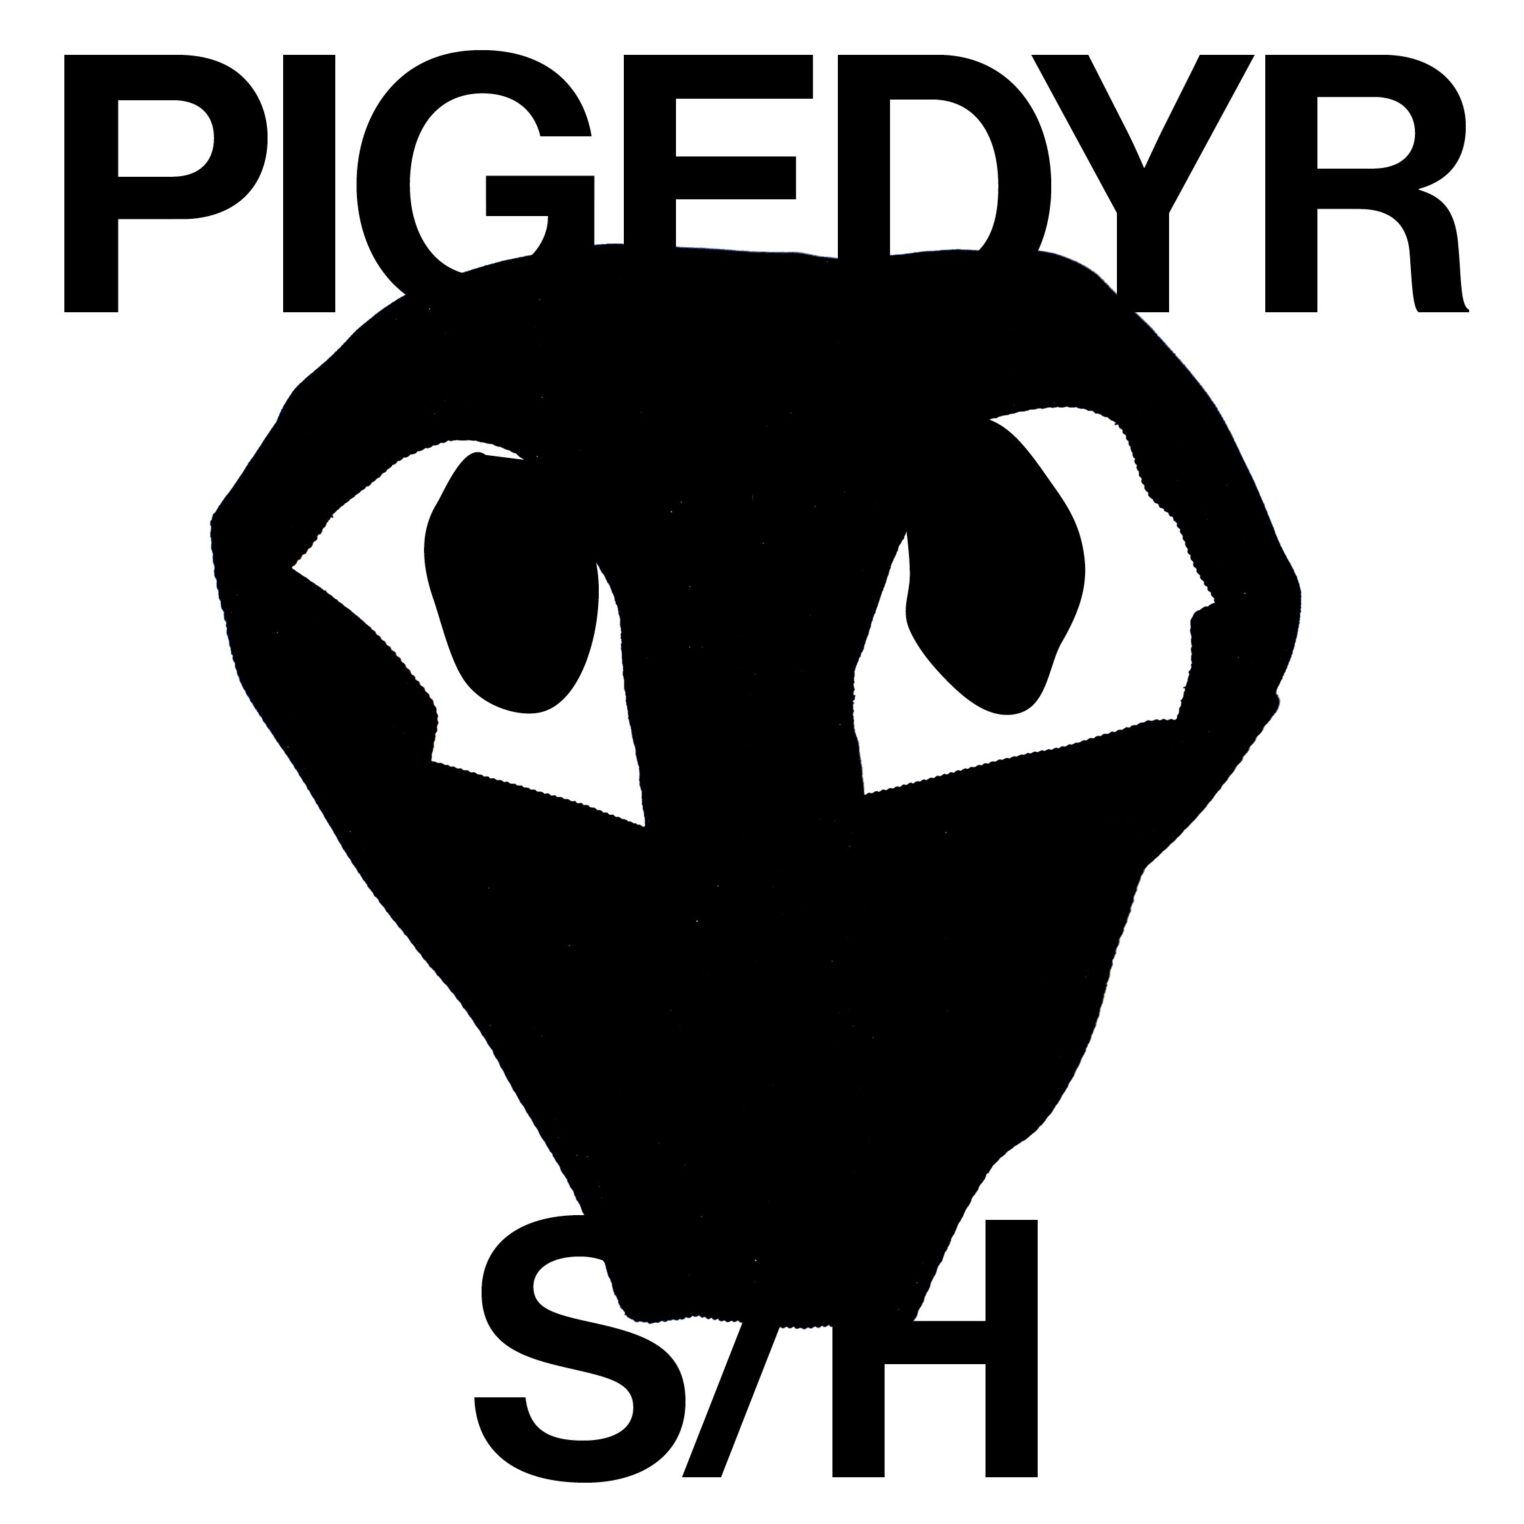 PIGEDYR